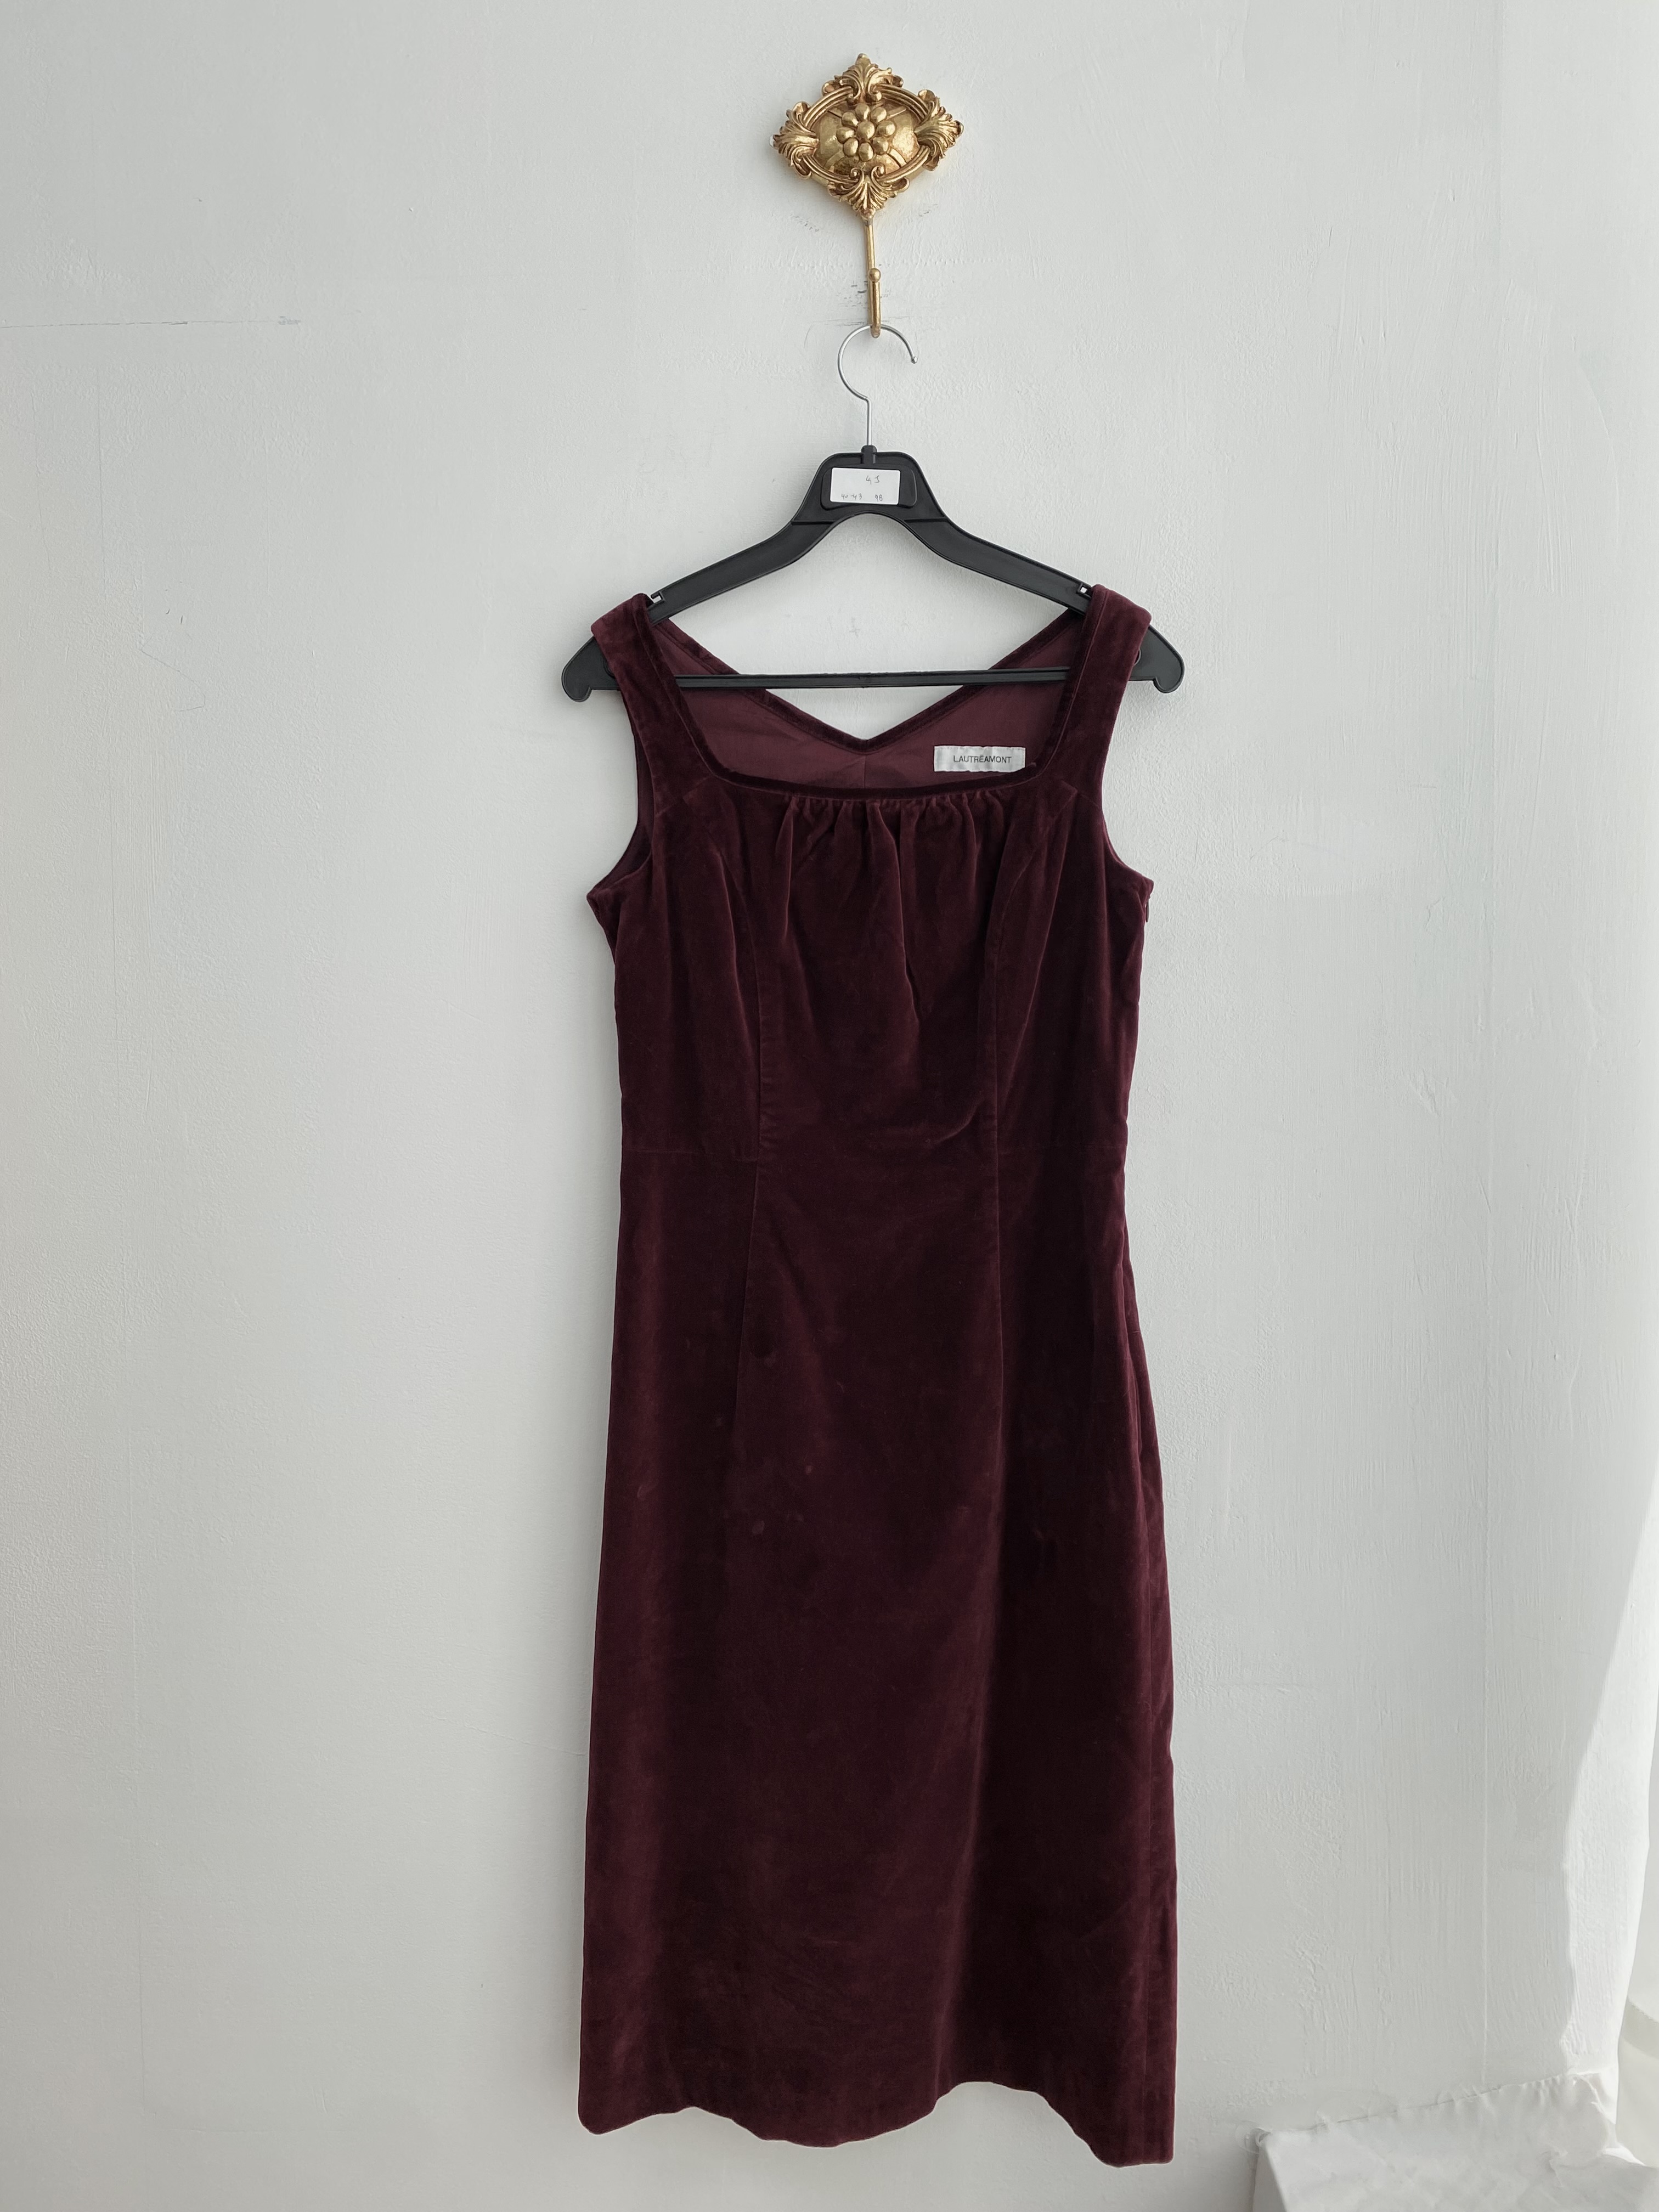 Red burgundy velvet sleeveless dress